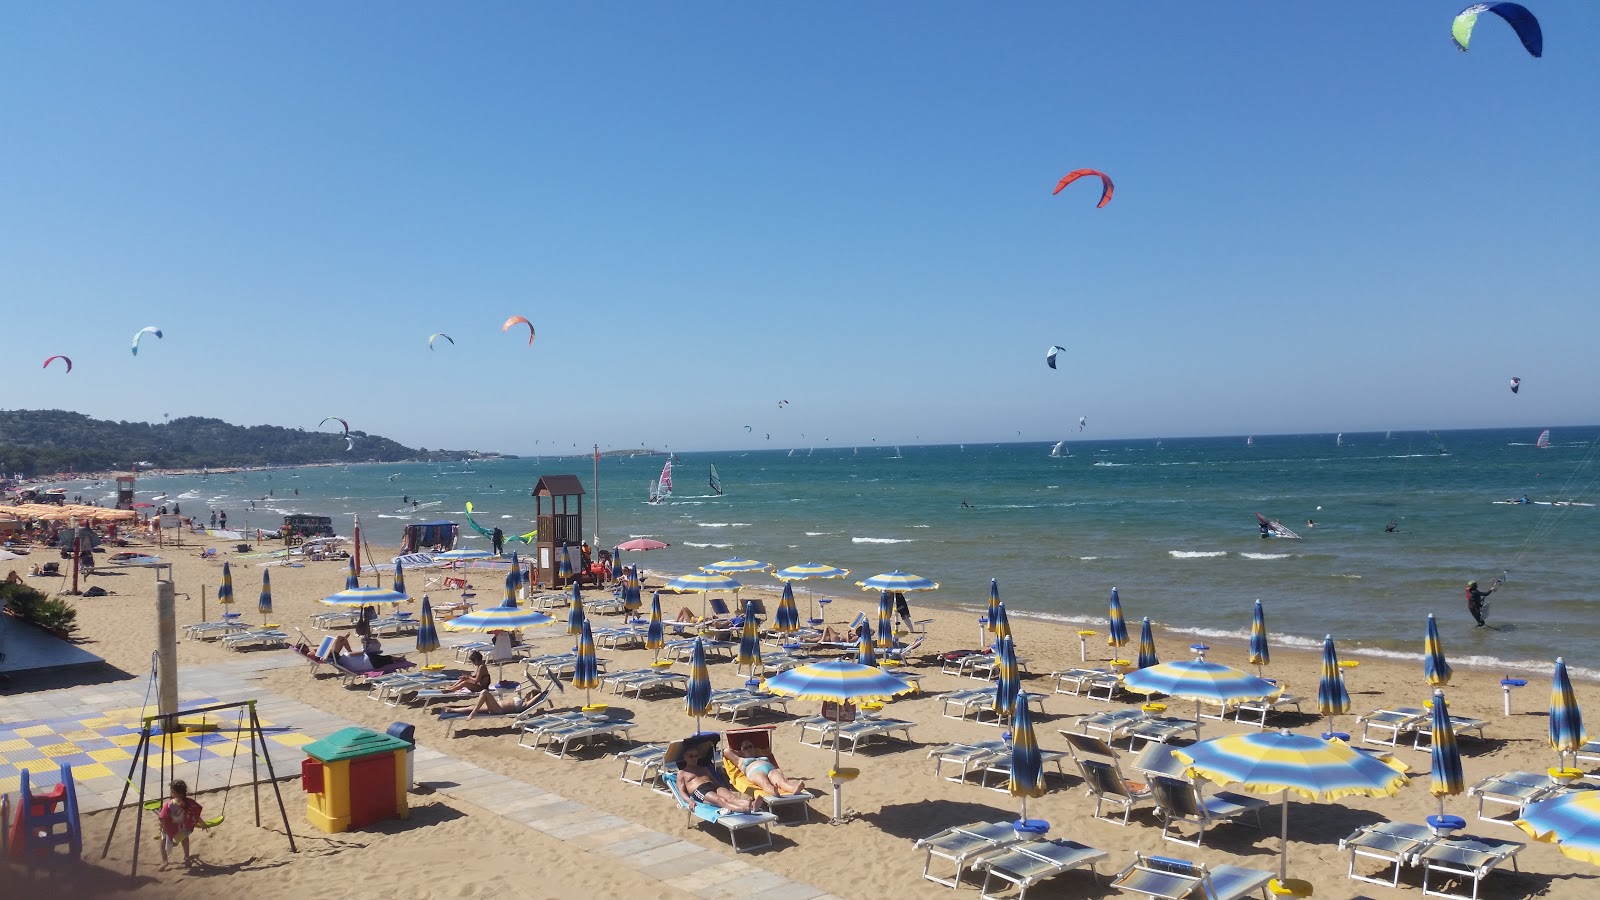 Foto de Spiaggia di Scialmarino área de complejo turístico de playa